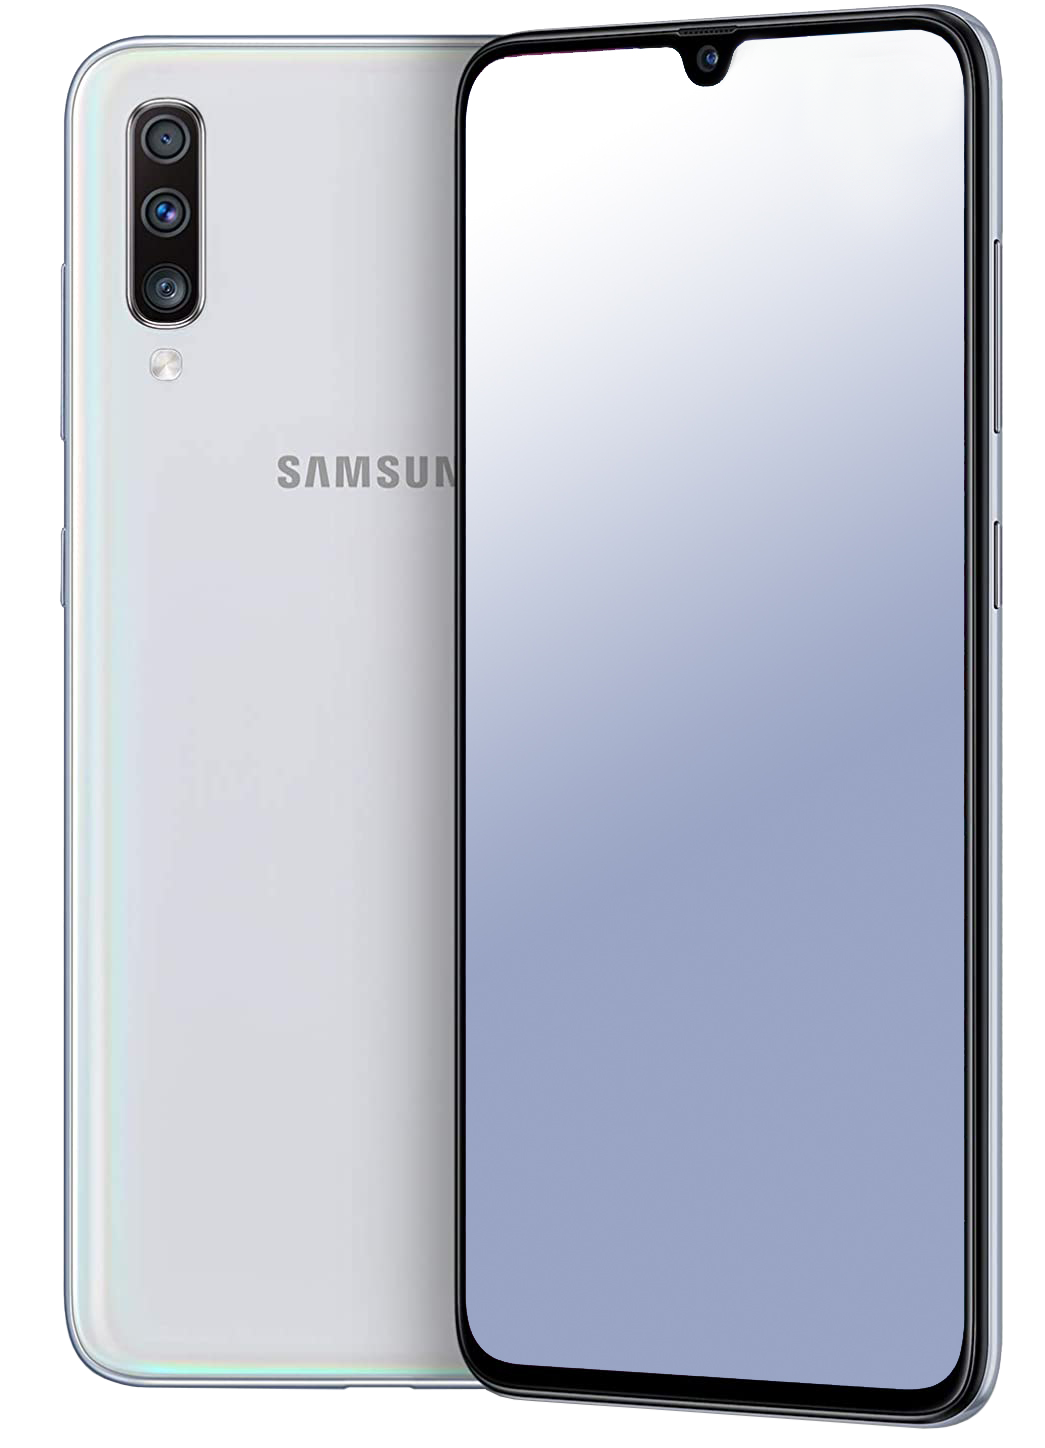 Samsung Galaxy A70 Dual-SIM weiß - Onhe Vertrag